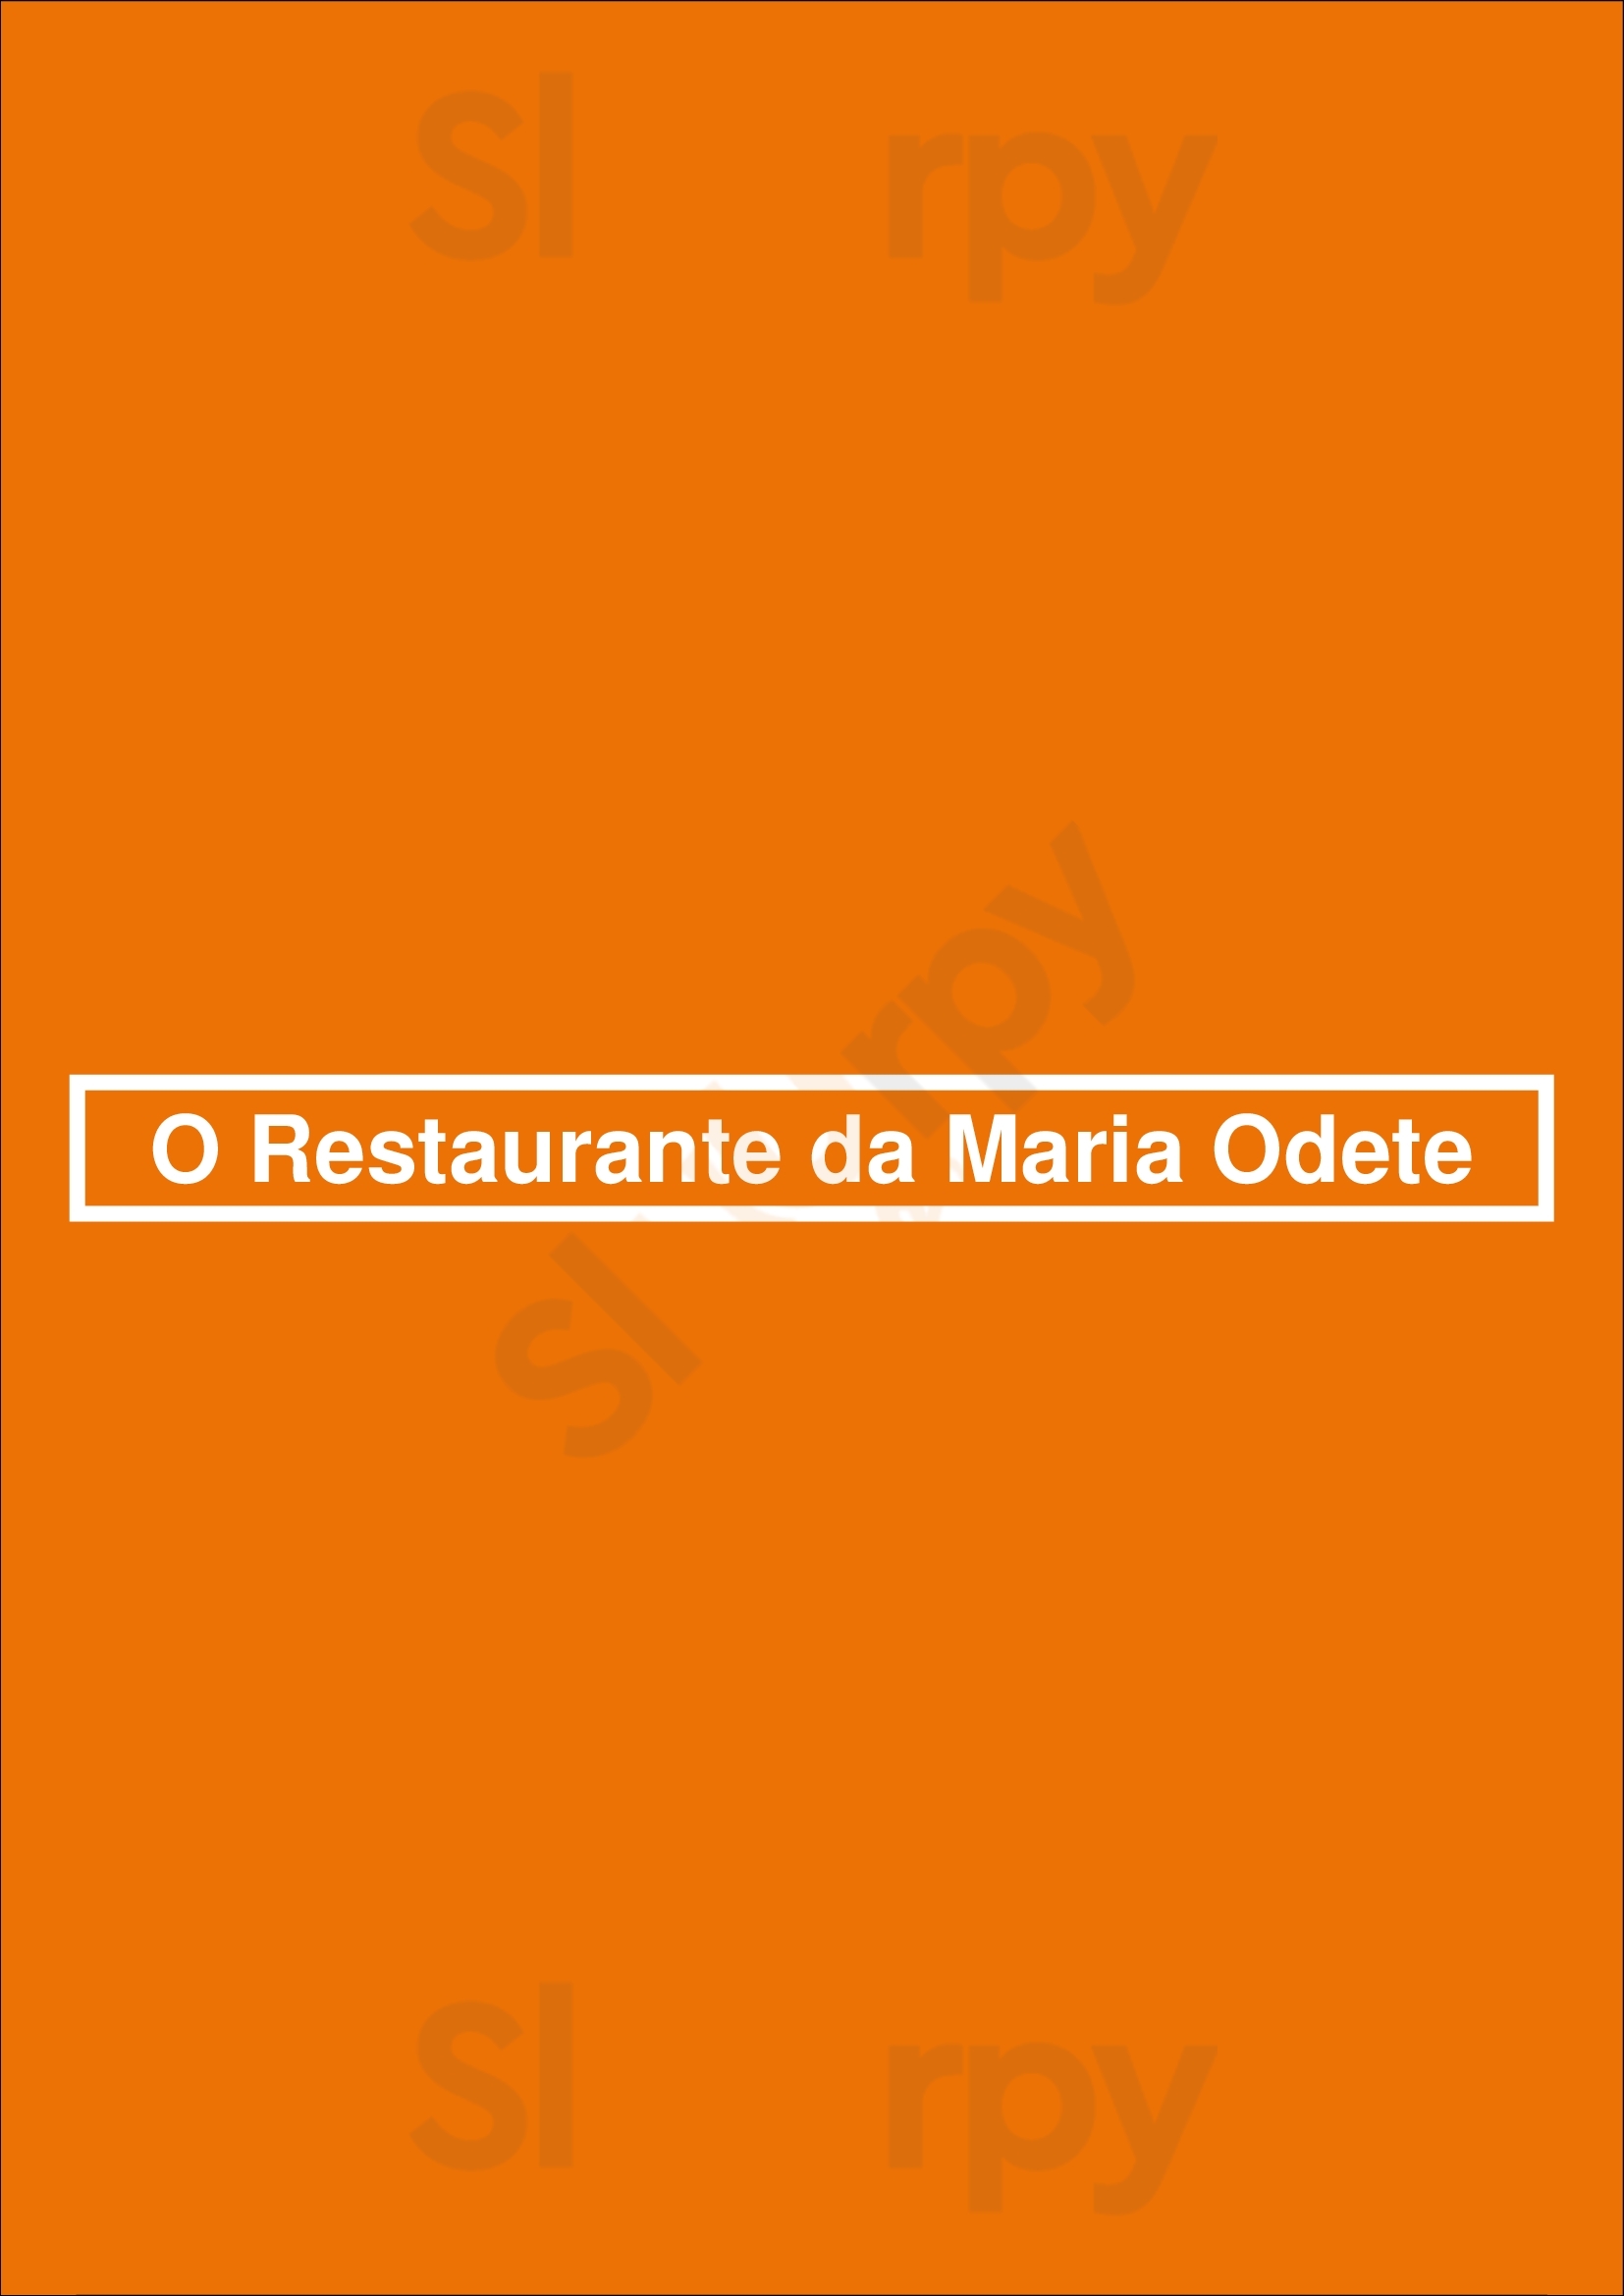 O Restaurante Da Maria Odete Porto Menu - 1